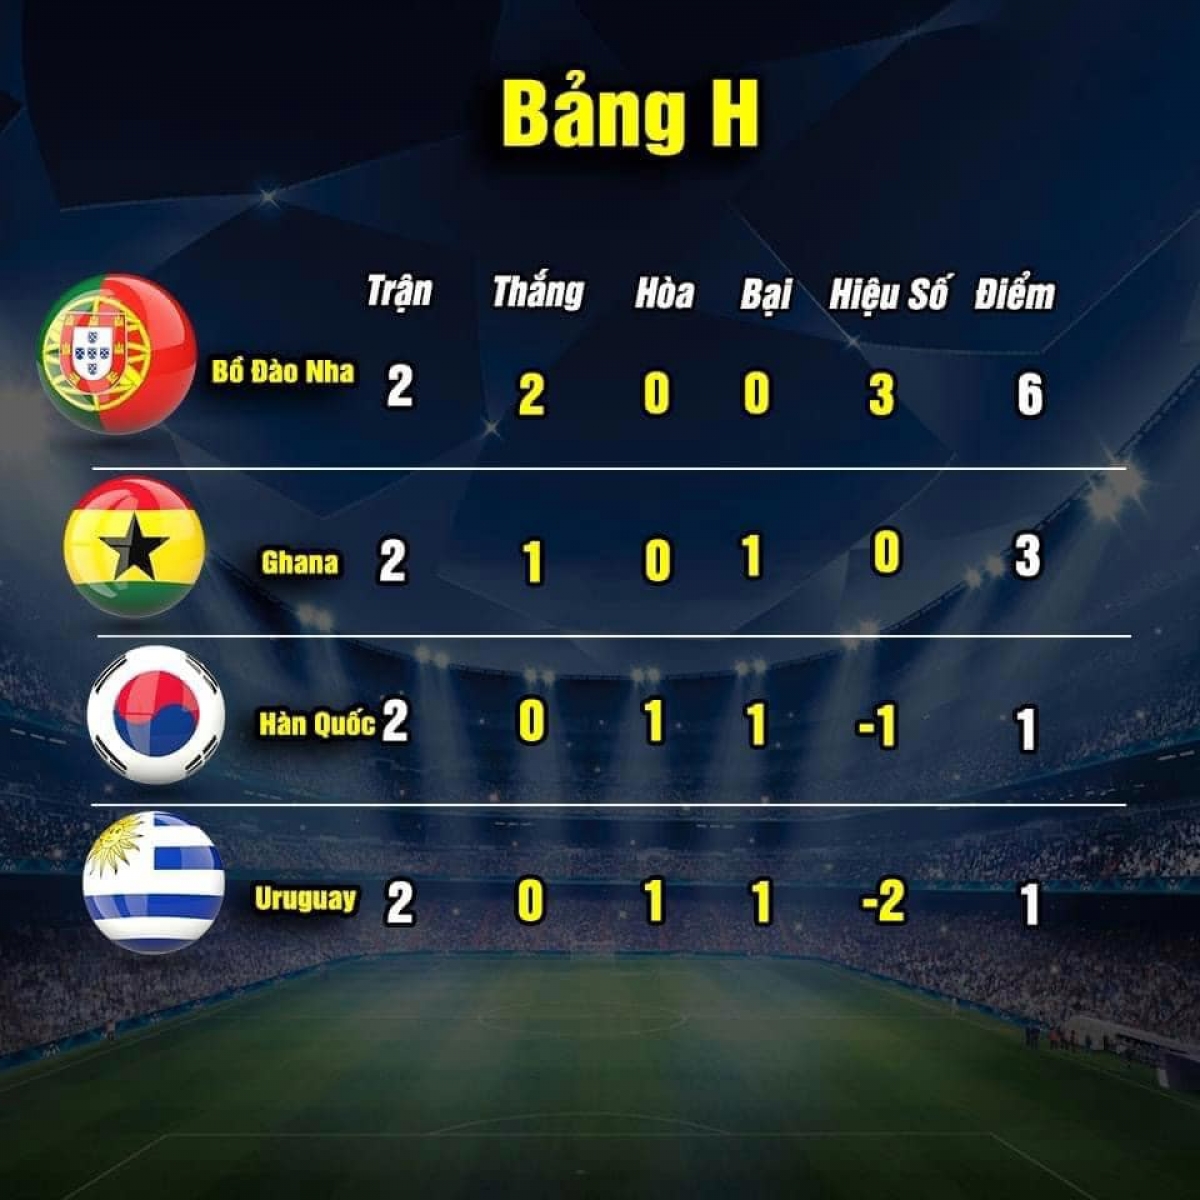 Cục diện bảng H sau hai lượt trận (ảnh: Thethao.vn) 